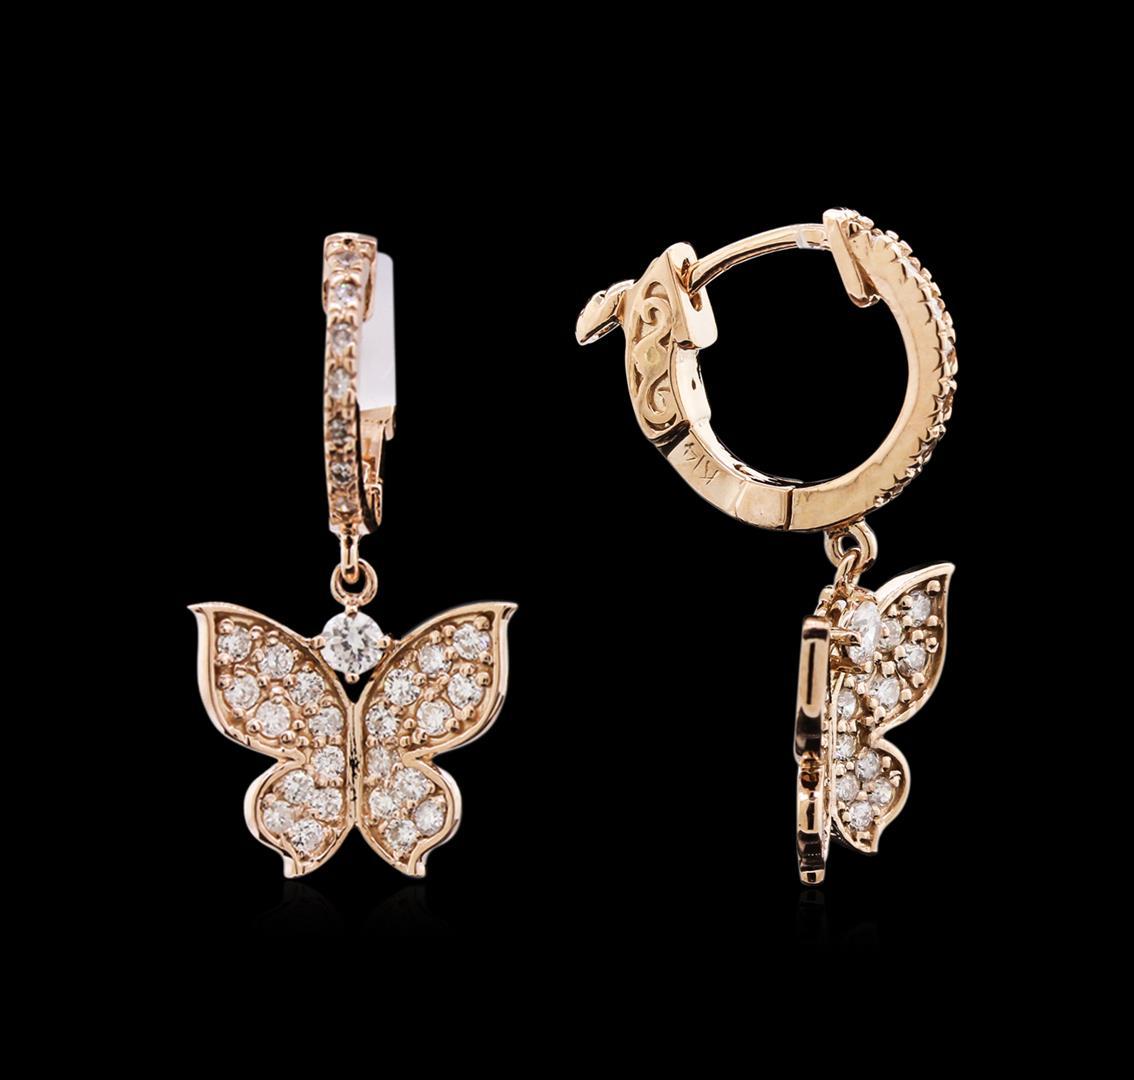 0.73 ctw Diamond Earrings - 14KT Rose Gold